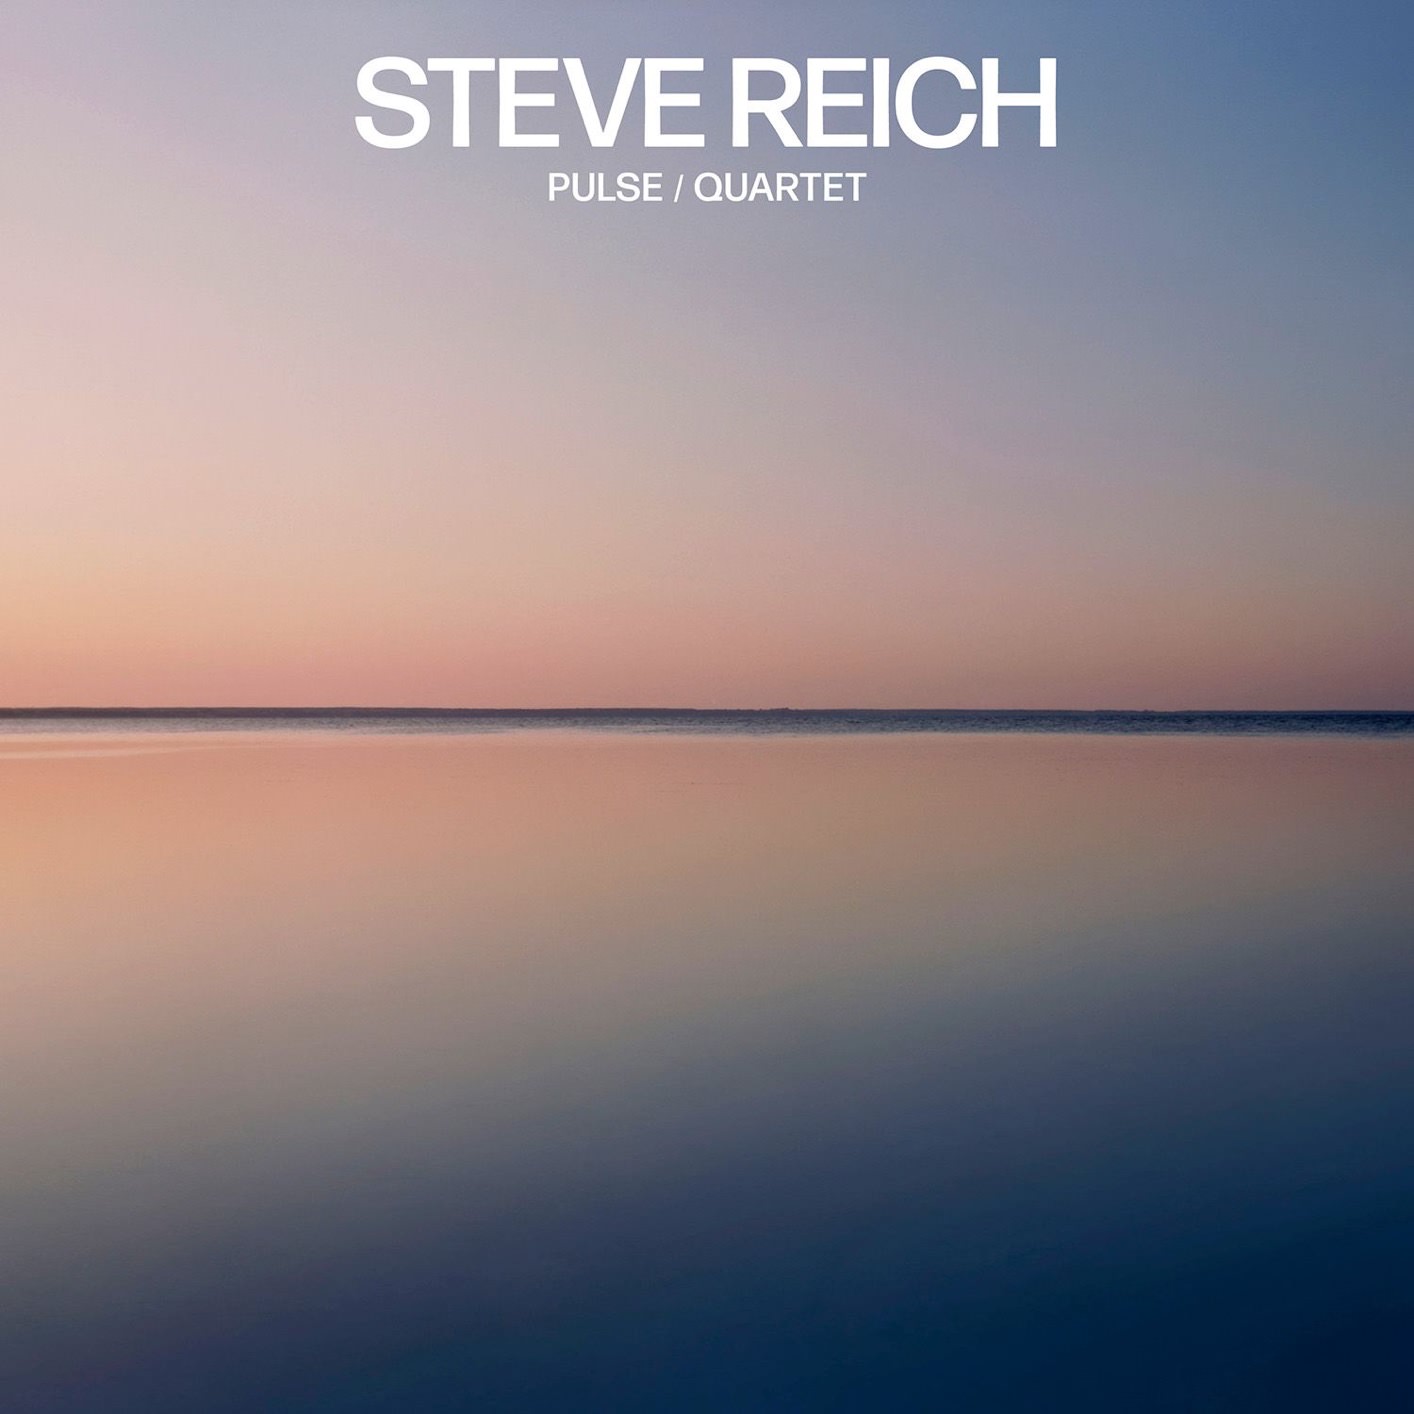 International Contemporary Ensemble & Colin Currie Group - Steve Reich: Pulse / Quartet (2018) [FLAC 24bit/48kHz]